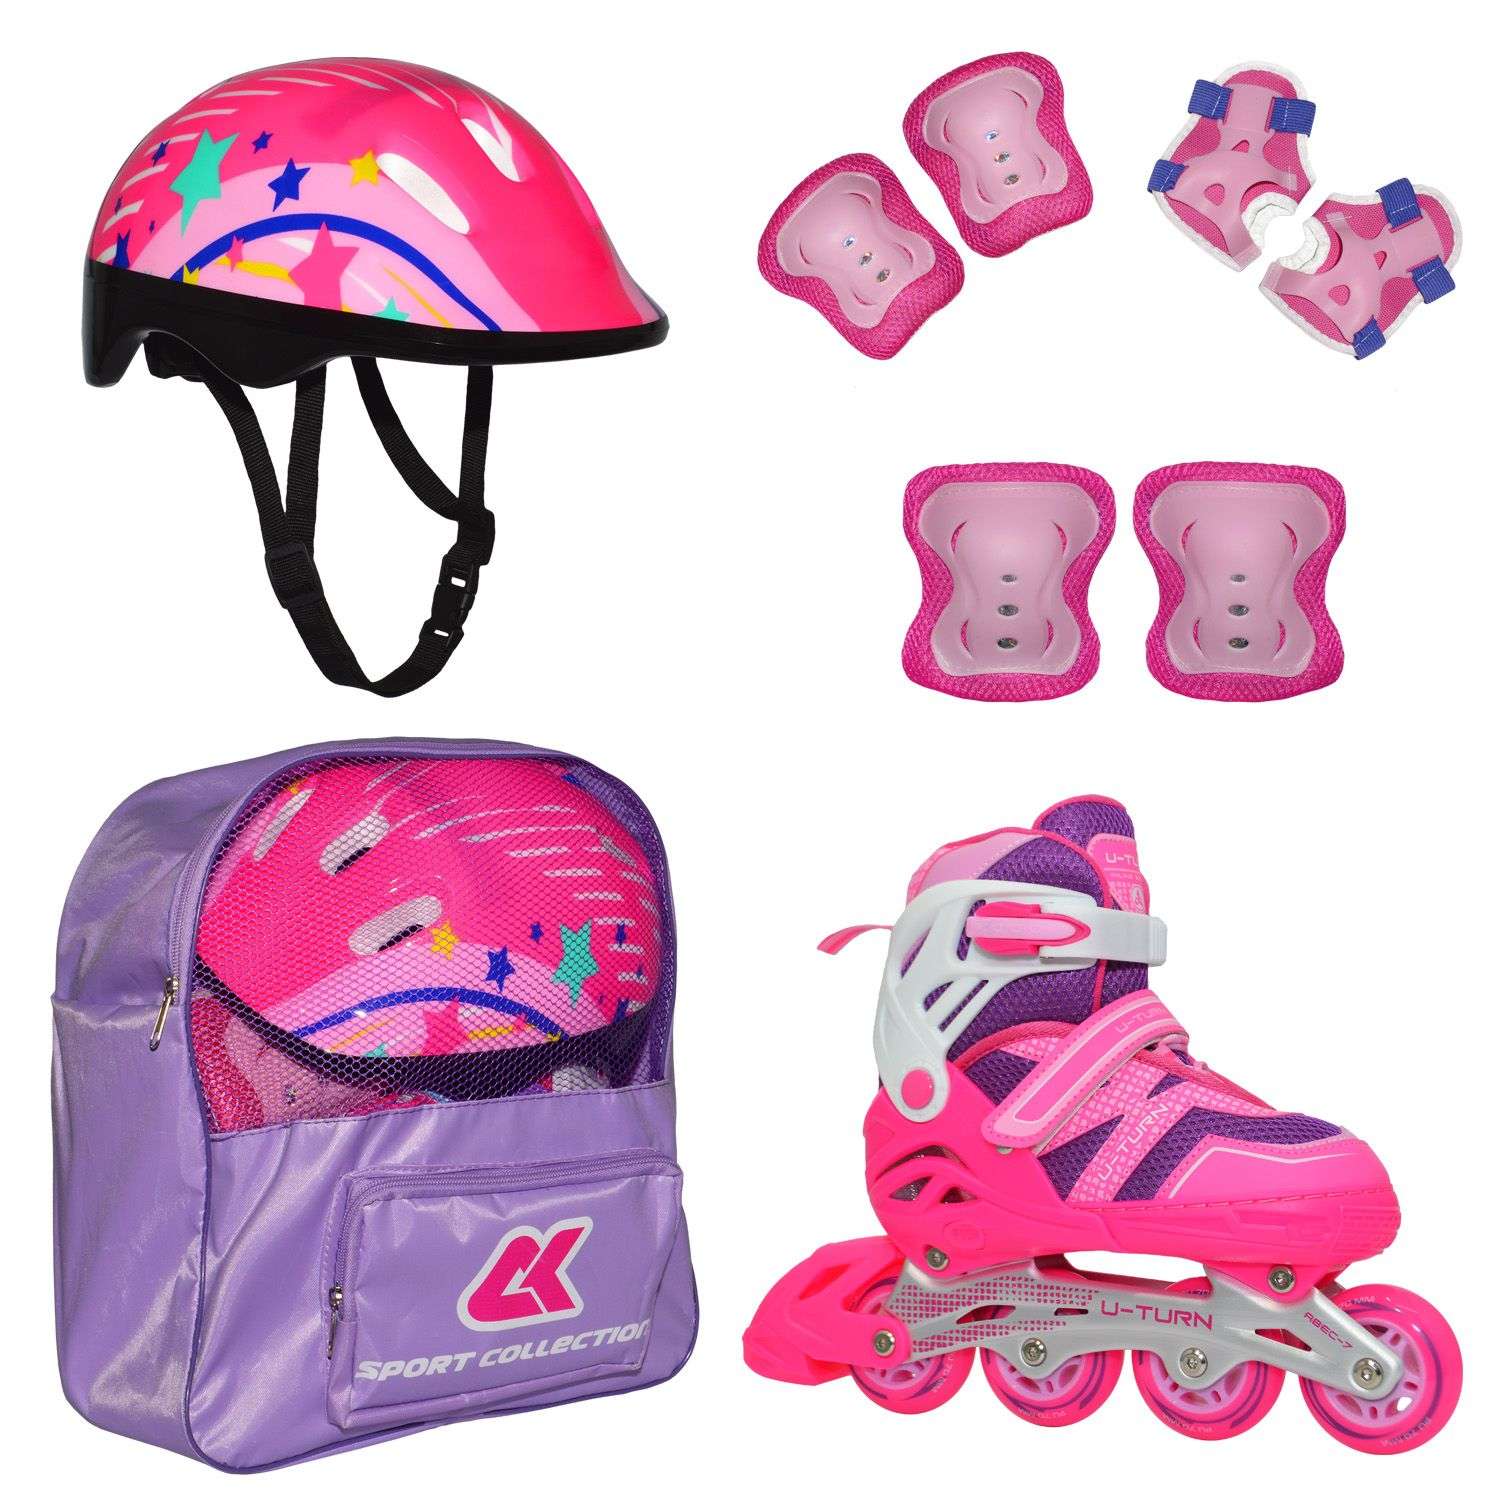 Роликовый комплект Sport Collection в сумке SET U-TURN Pink ролики р. 34-37 Шлем 50-56 Защита S/M - фото 1